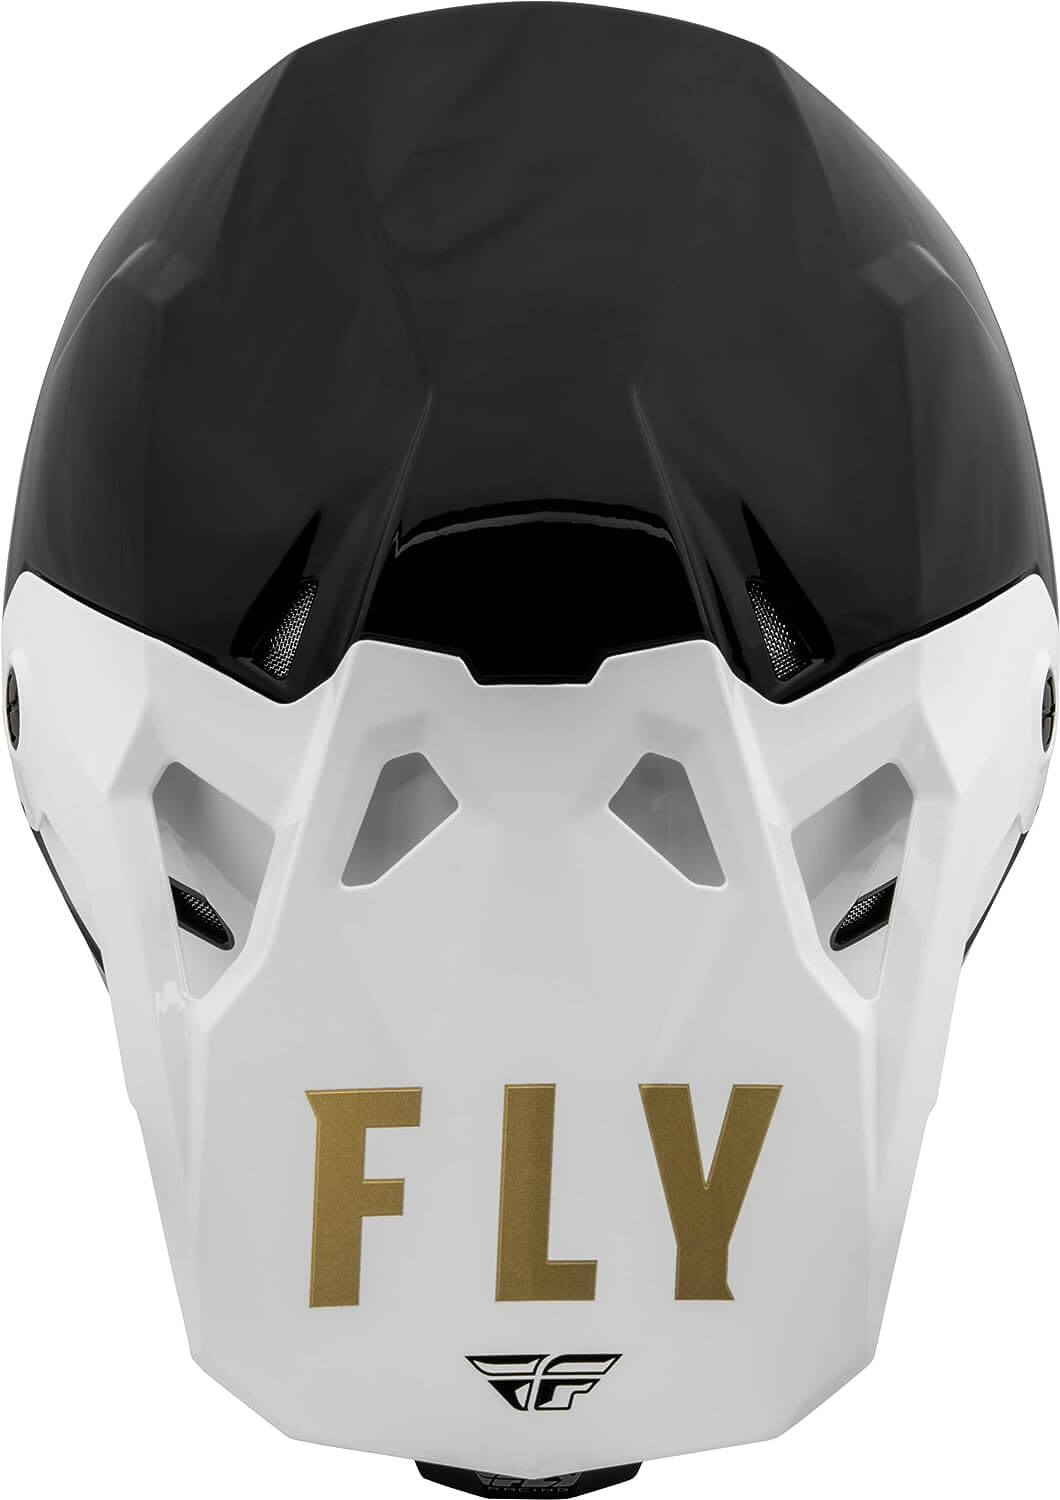 Casco Fly Formula CP Slant Negro/Blanco/Dorado